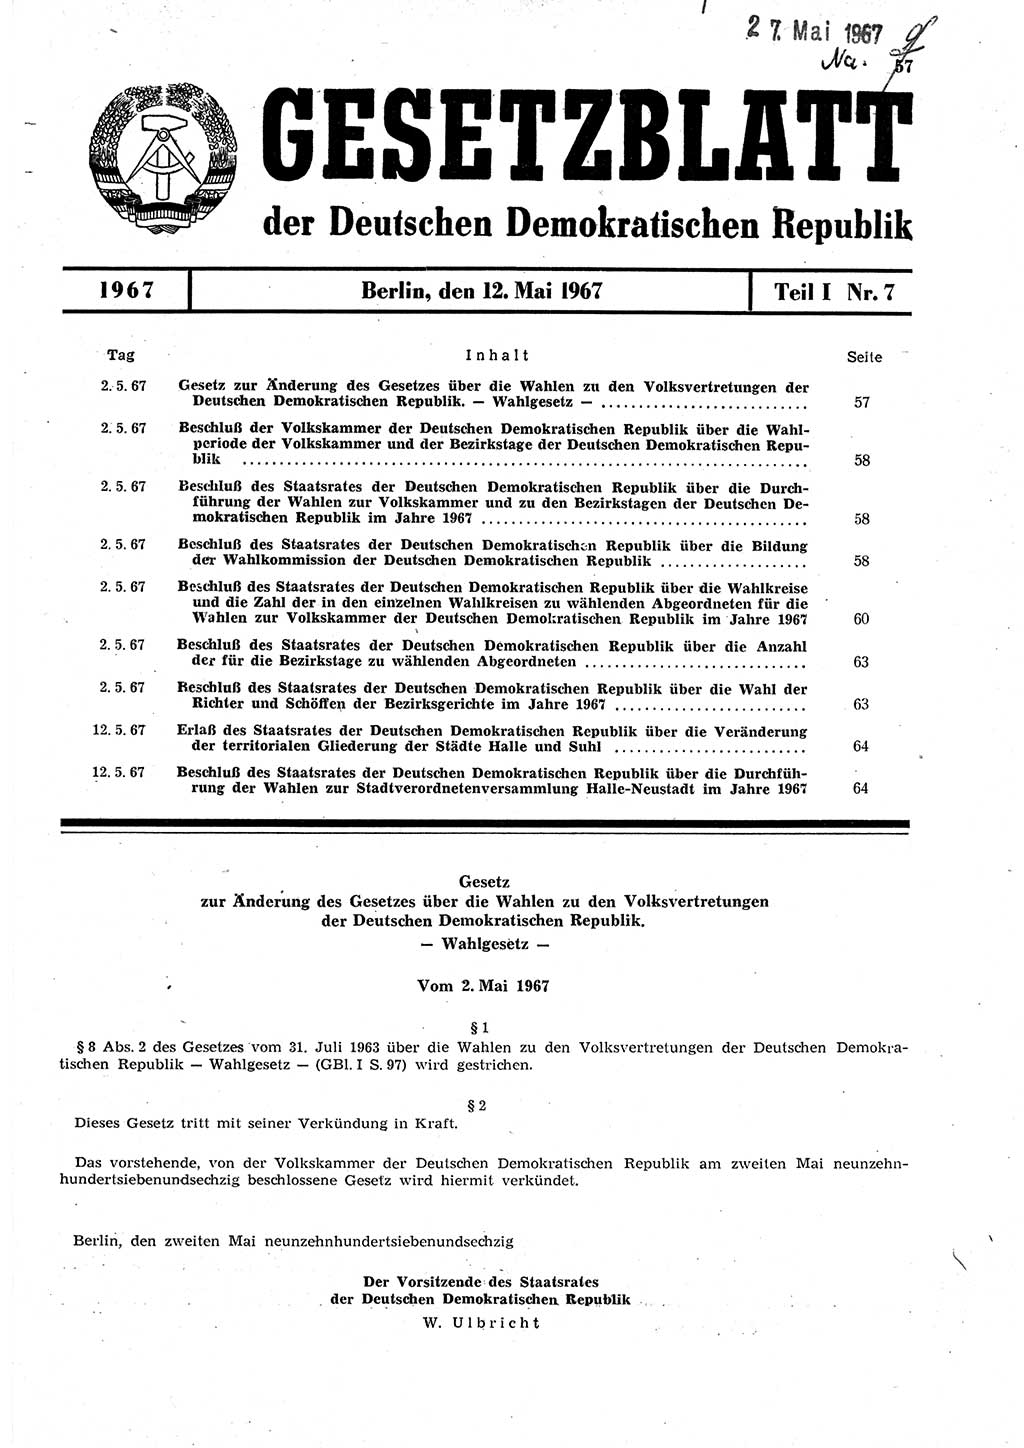 Gesetzblatt (GBl.) der Deutschen Demokratischen Republik (DDR) Teil Ⅰ 1967, Seite 57 (GBl. DDR Ⅰ 1967, S. 57)